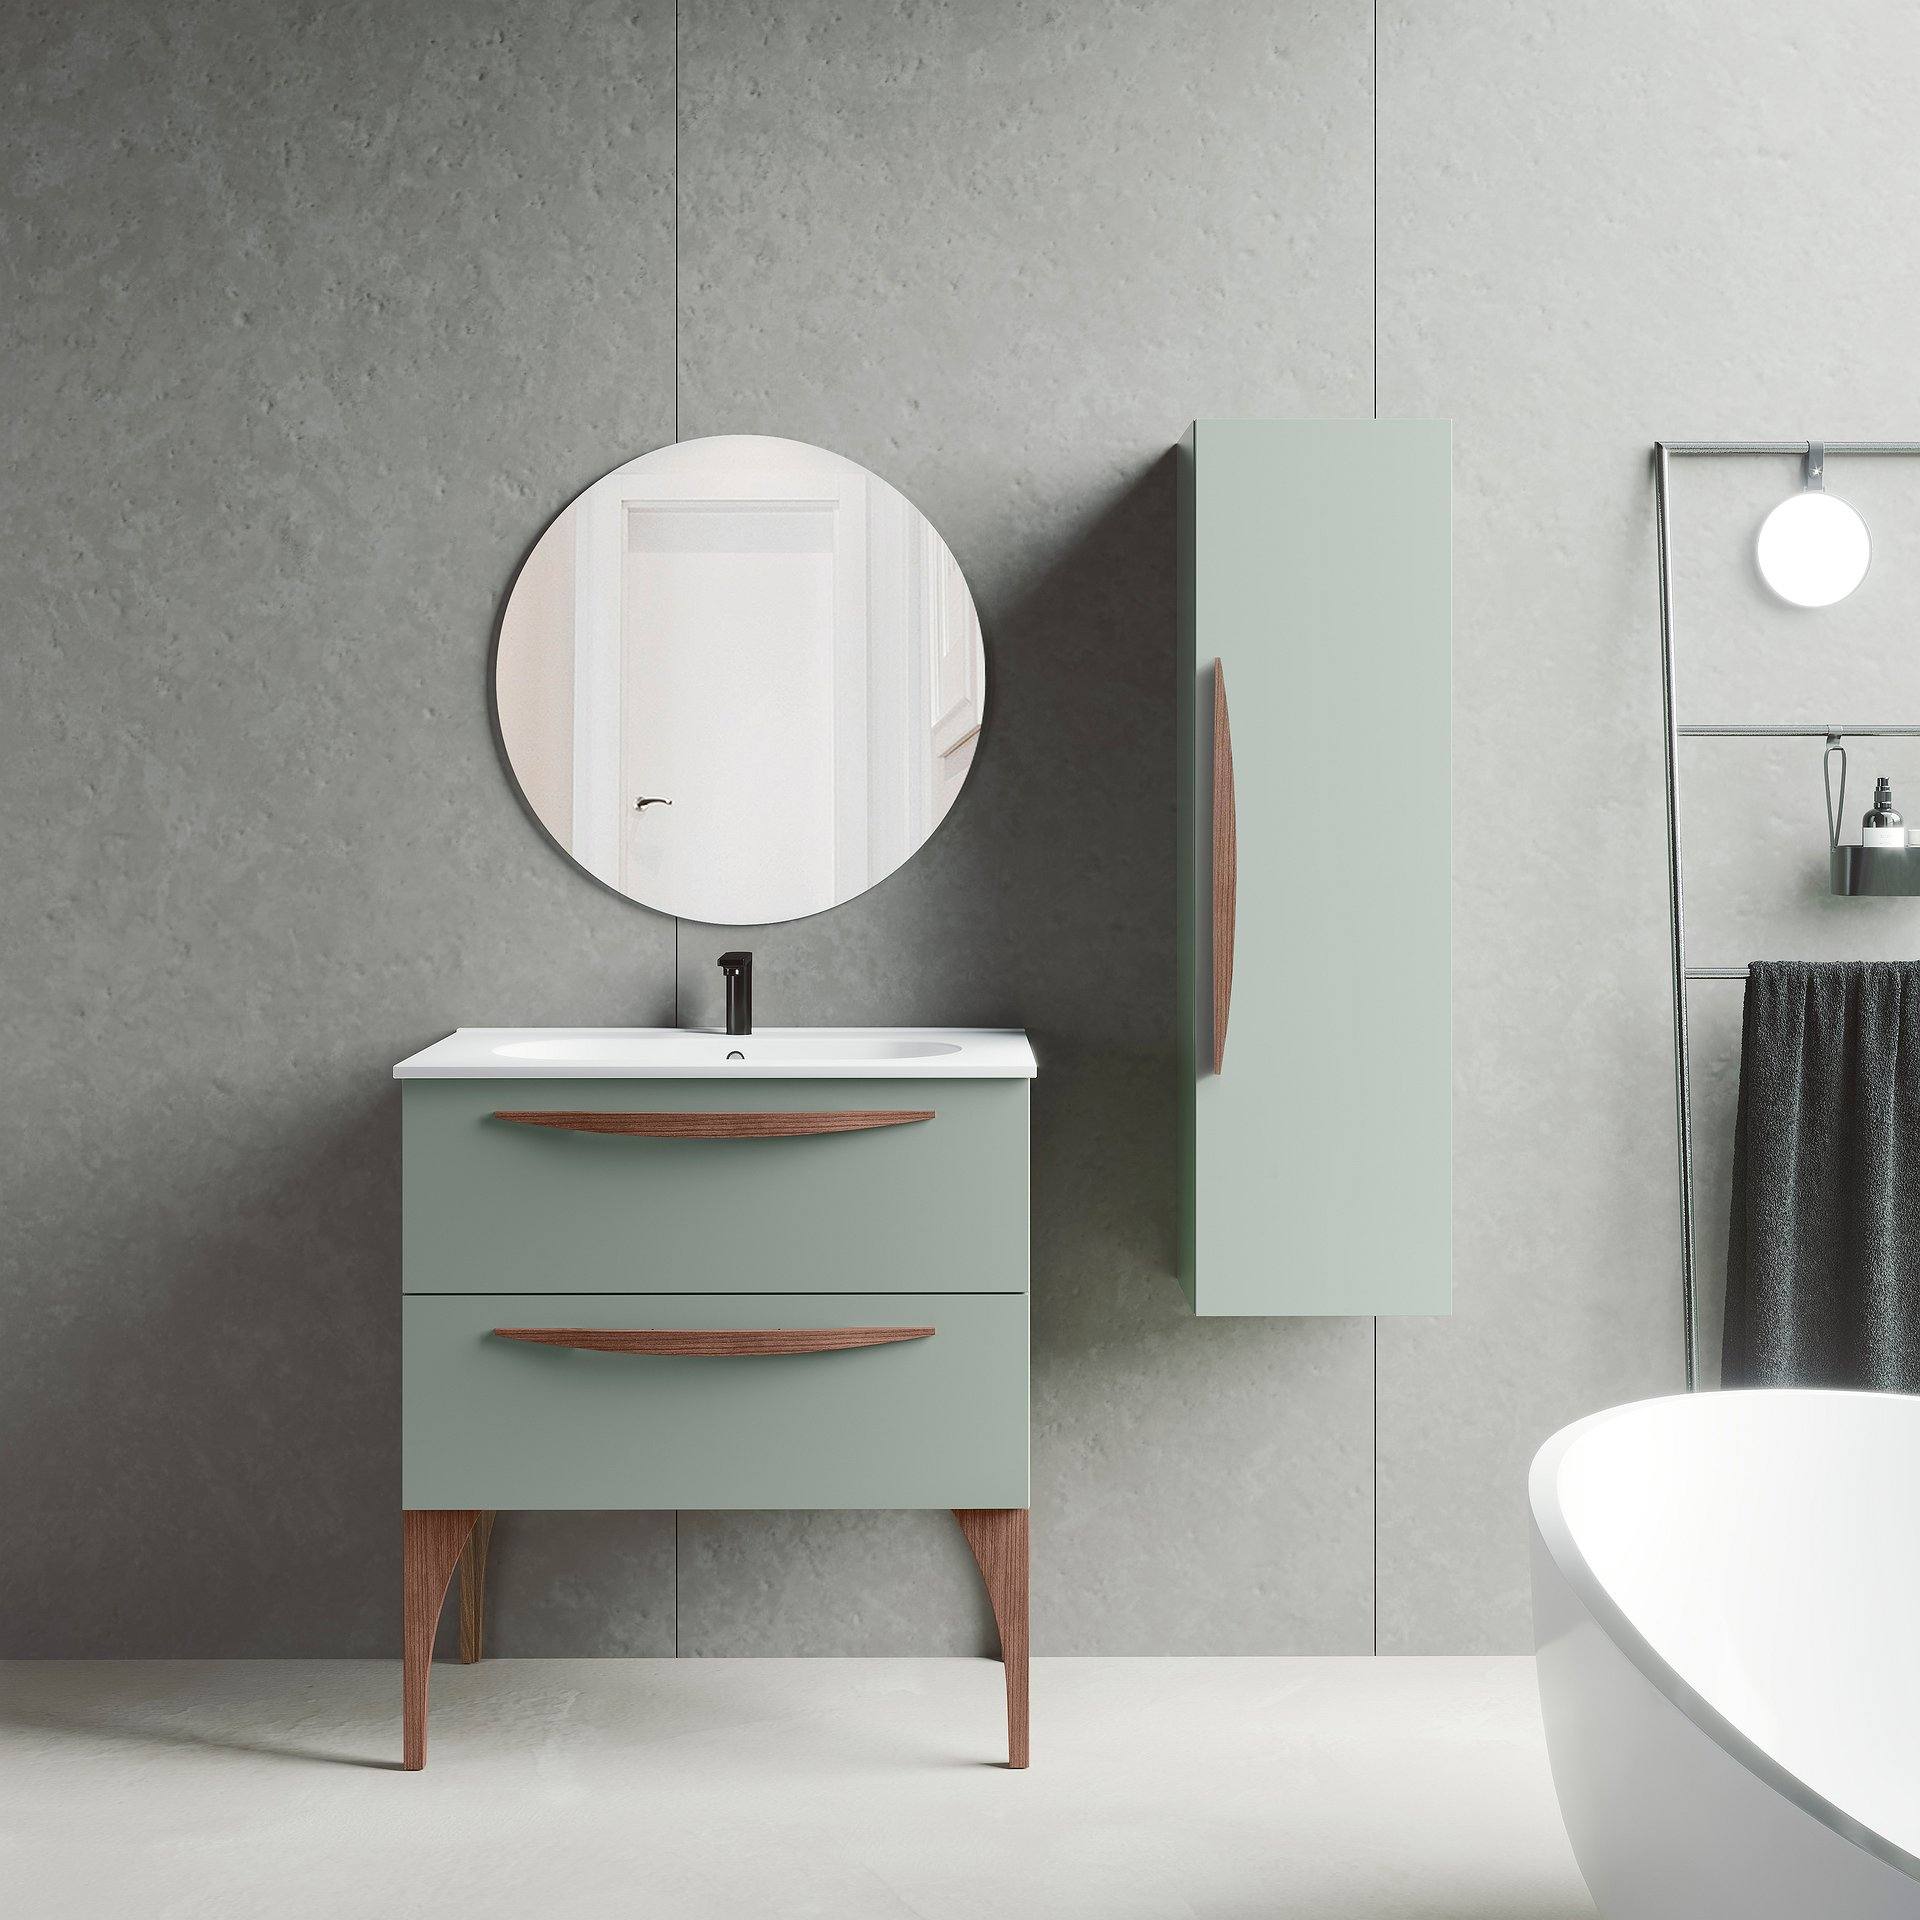 Mueble de baño modelo sansa 80cm con 2 cajones lavabo ceramico